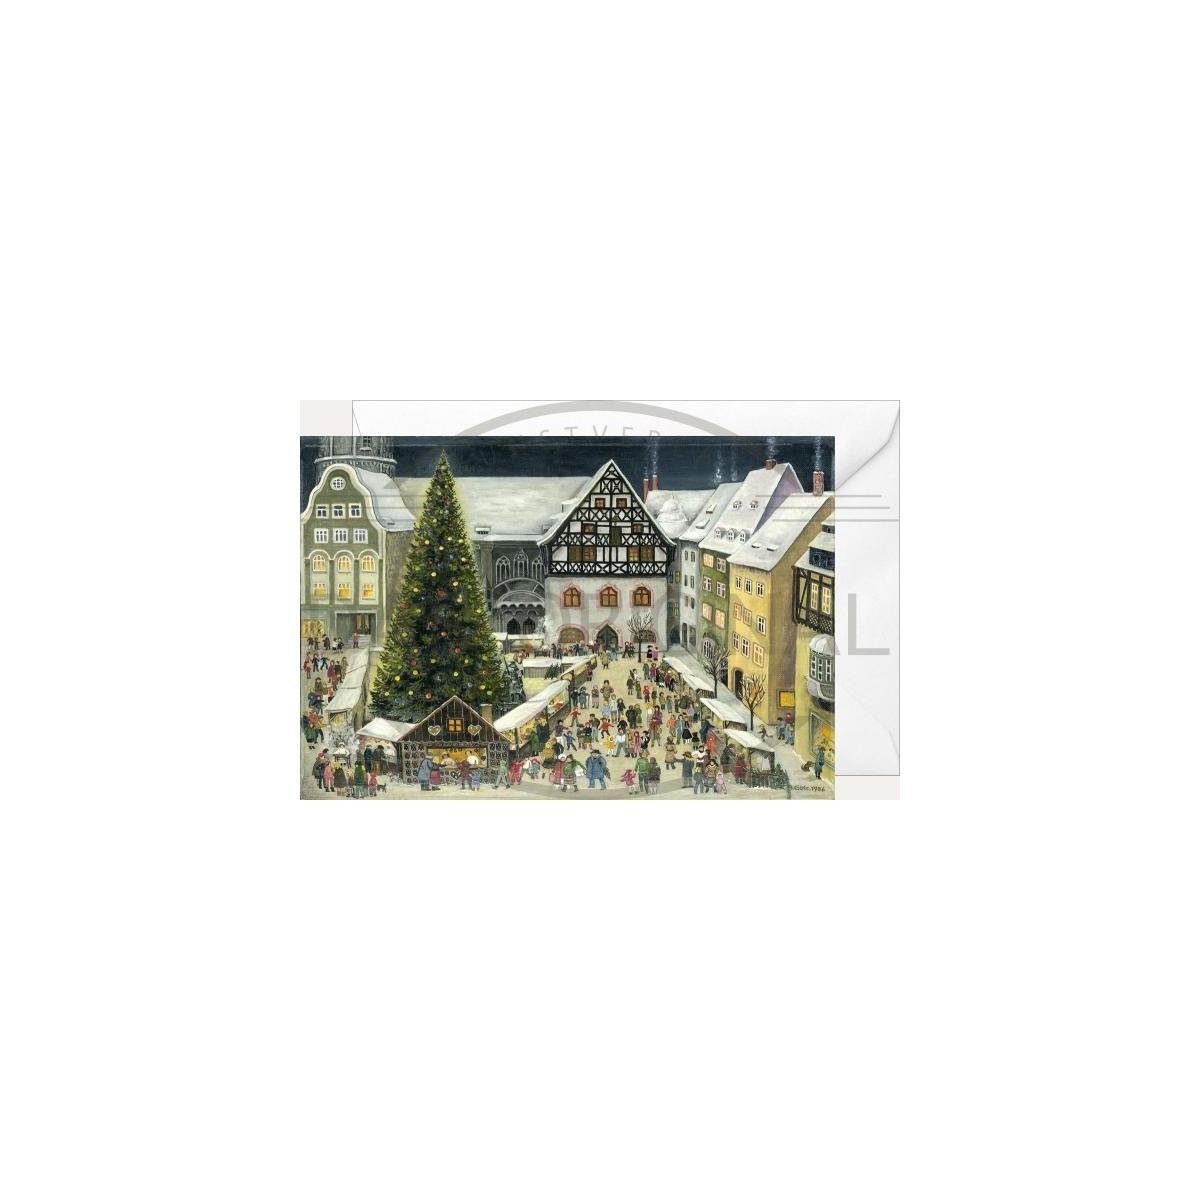 Grußkarte Weihnachtsklappkarte Weihnachtsmarkt & 2937 - Jena Olewinski - Tochter